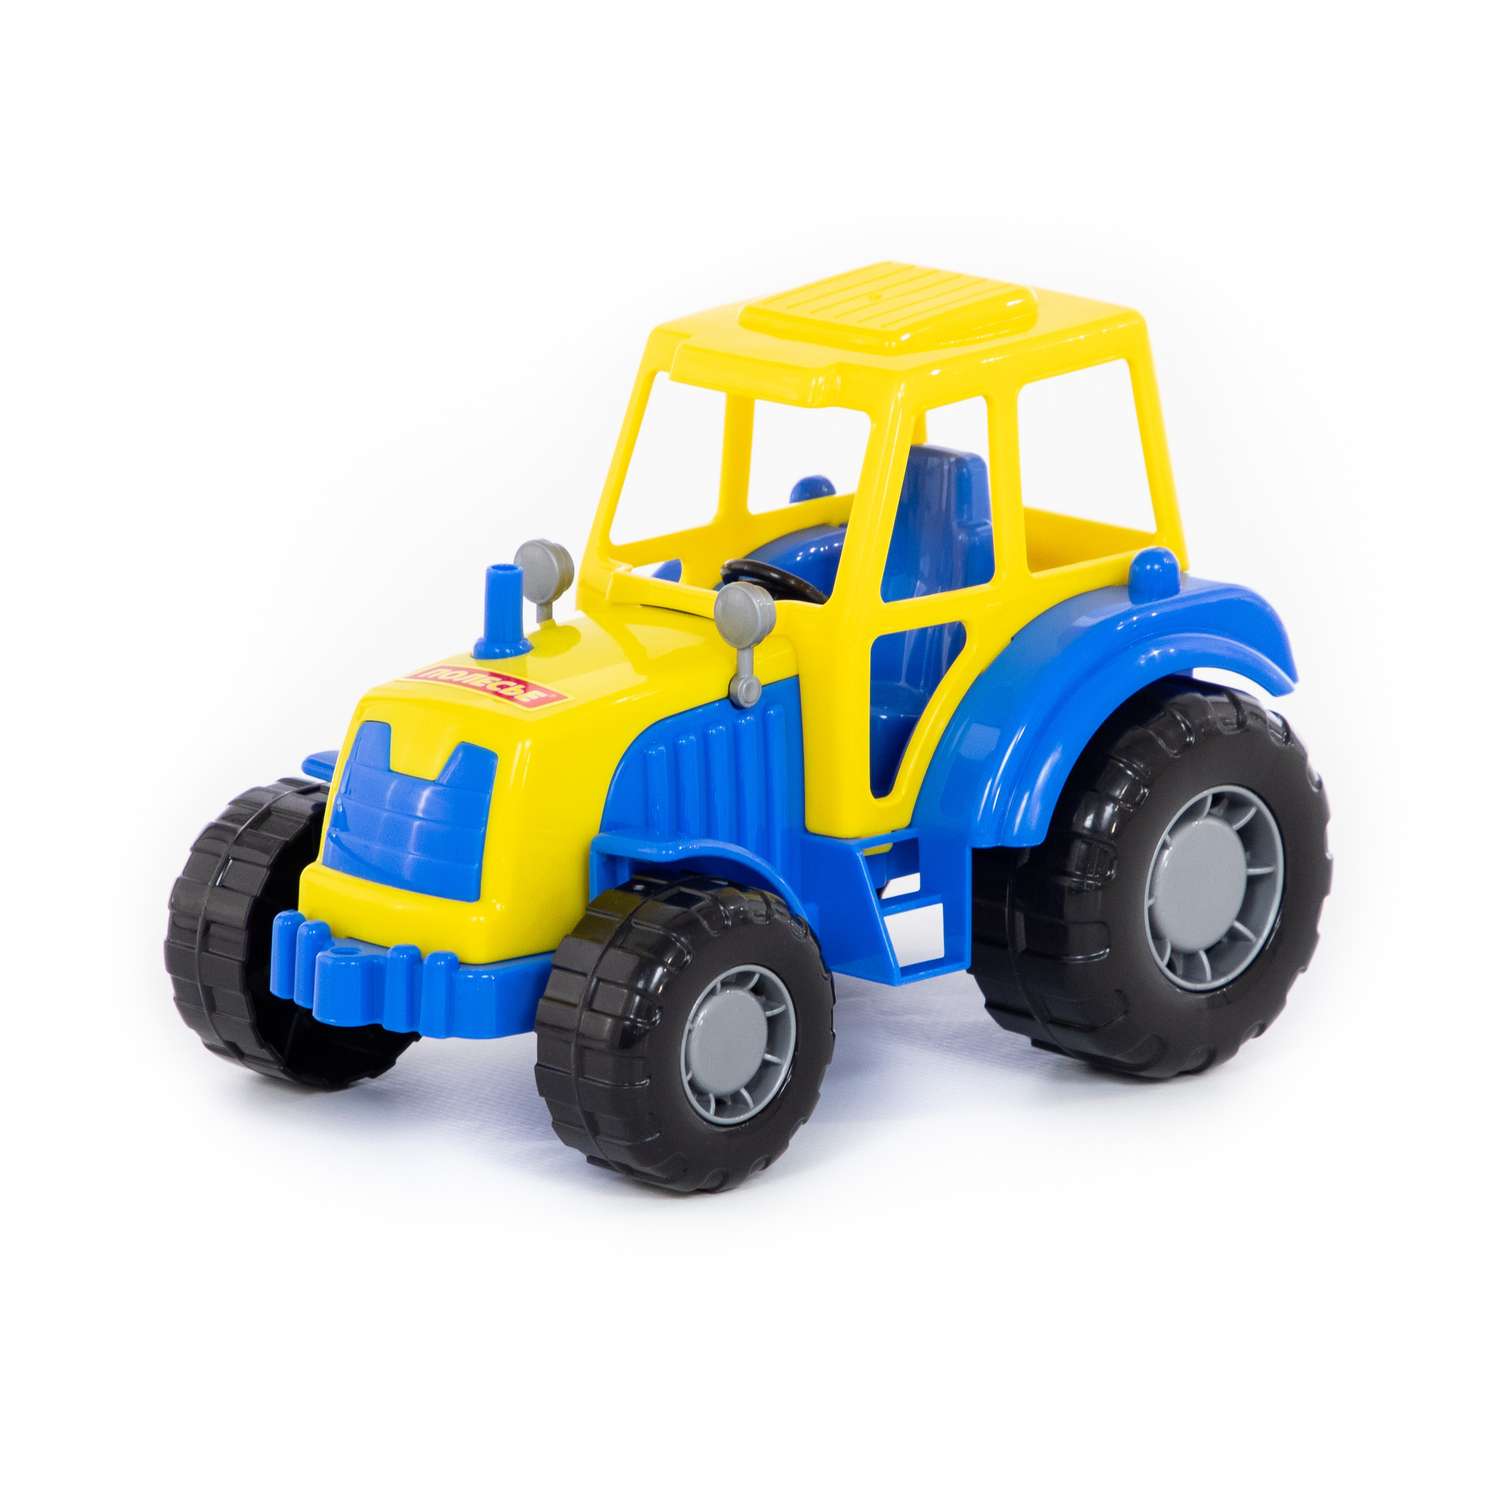 Трактор Полесье Мастер синий с желтым 35240/3 - фото 4